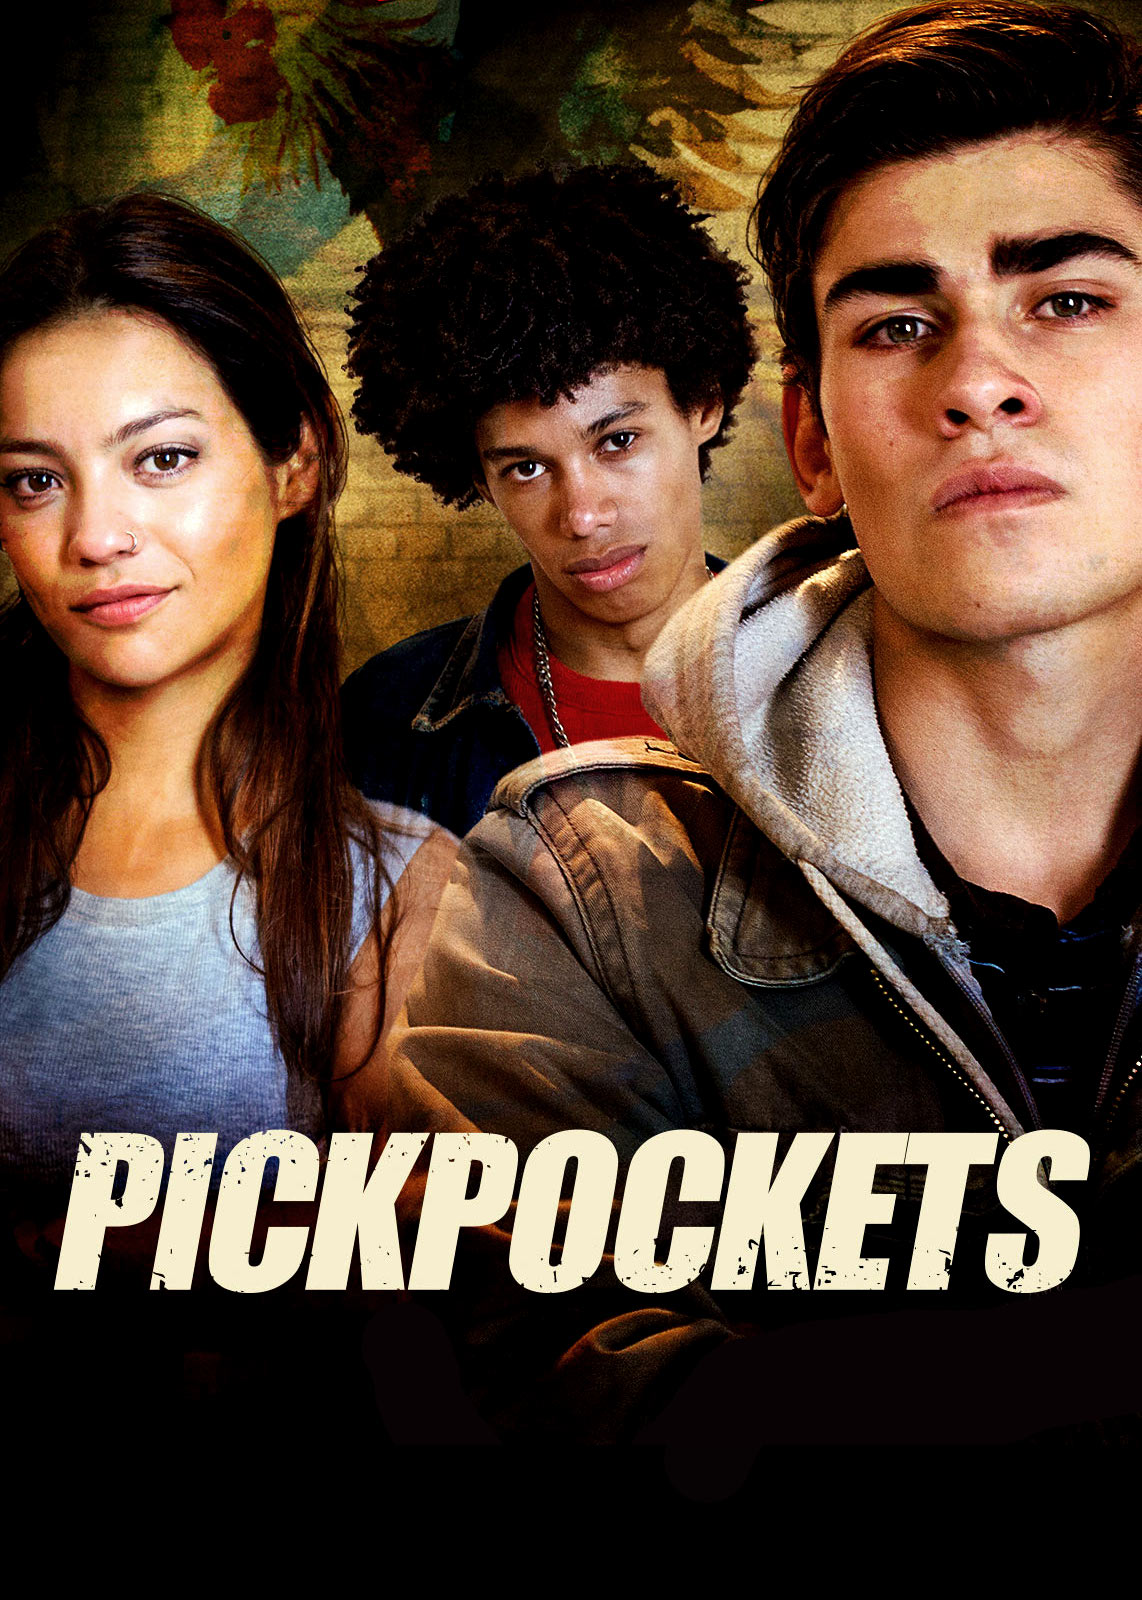 Pickpockets [HD] (2018)